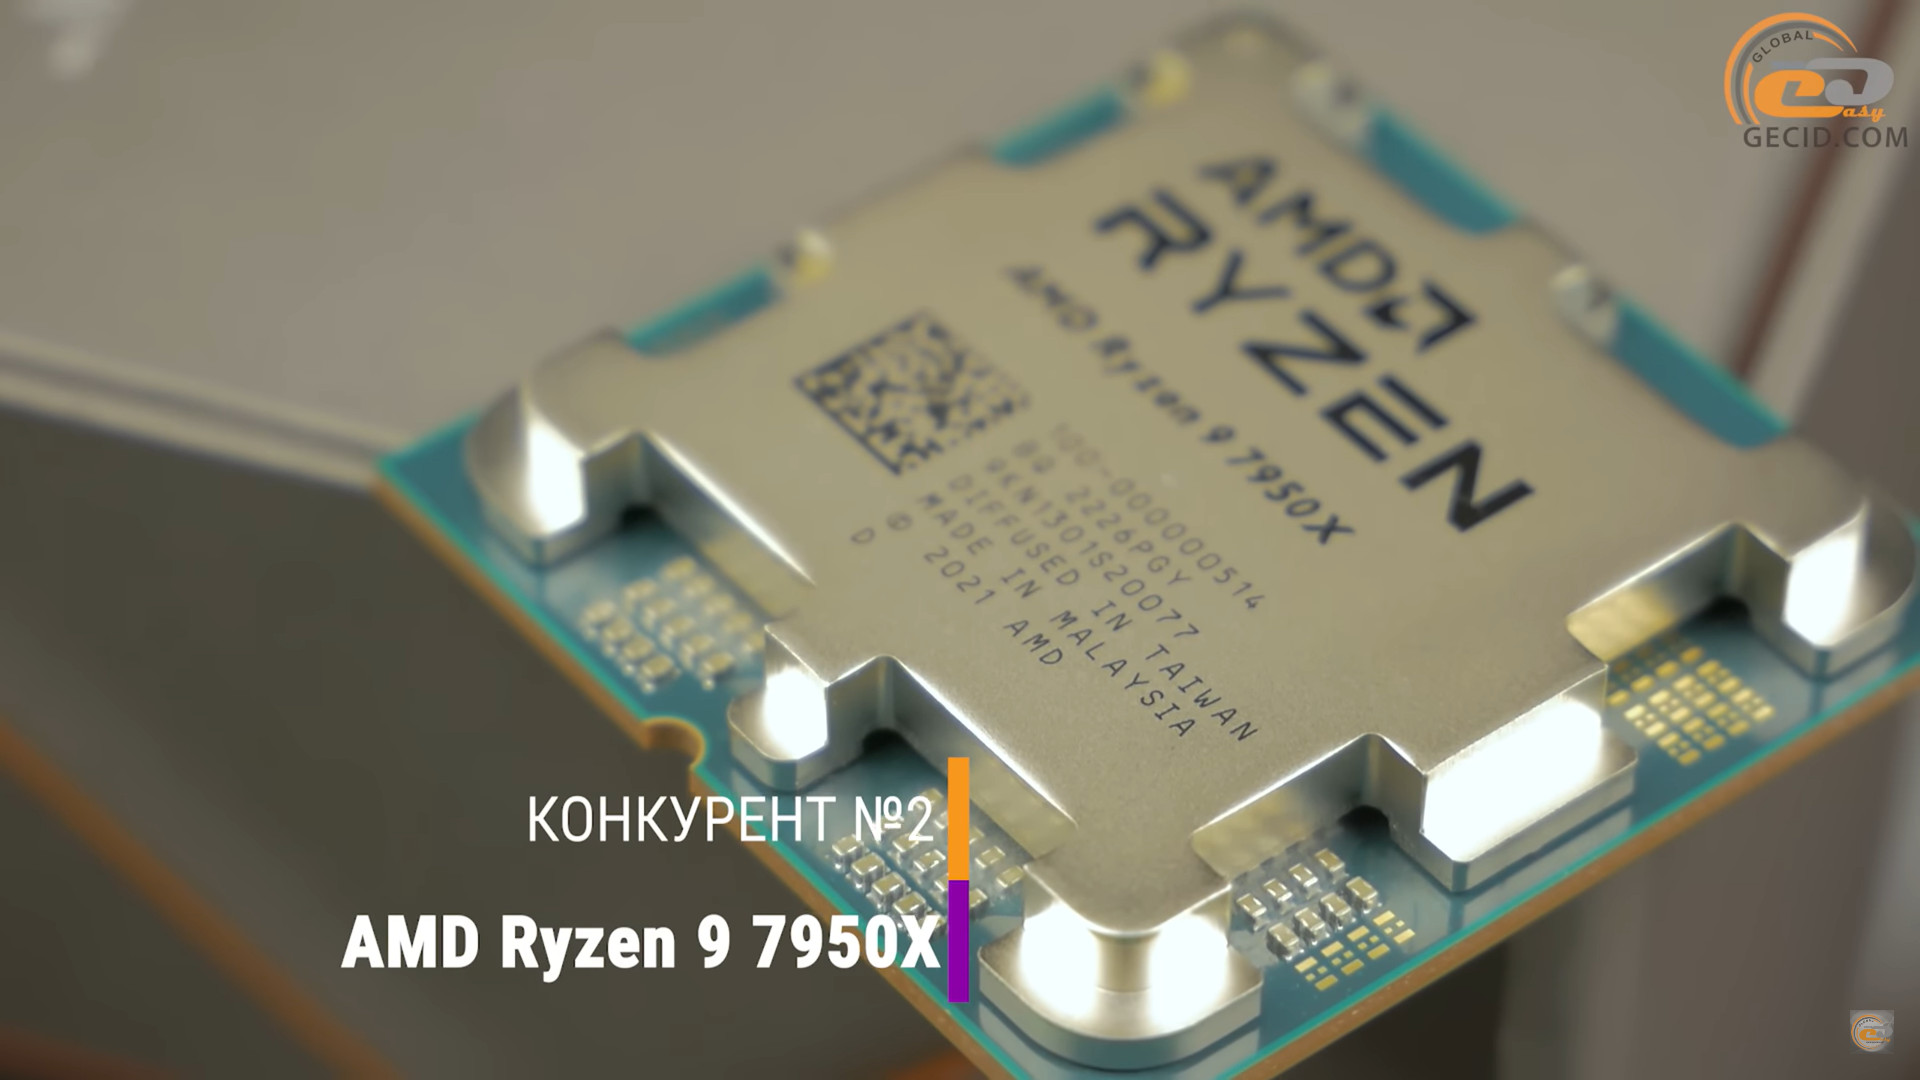 Ryzen i9 7950x. Intel Core i9 13900. Intel Core i9 10900kf тест. Intel Box Cooler i9 13900 Fan. Фото Ryzen 7950x.